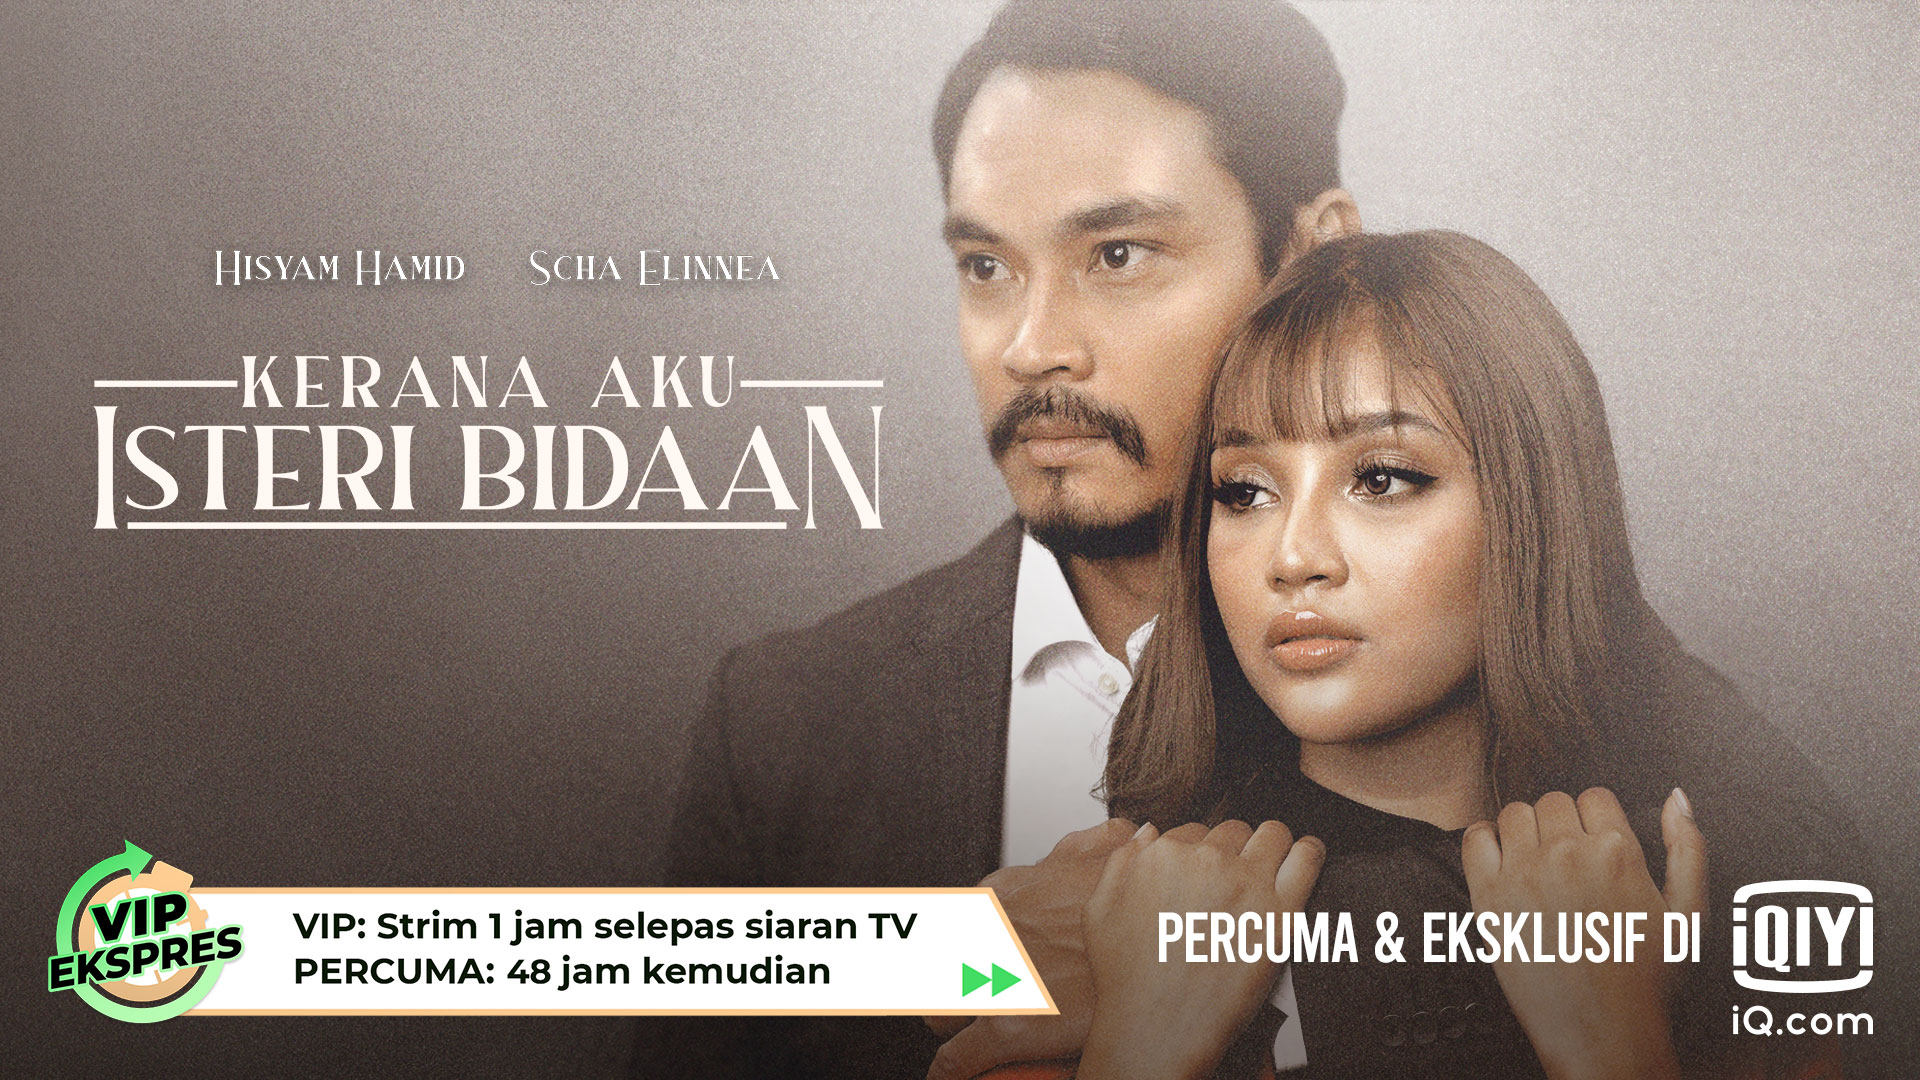 Akibat Terlampau Sayang, Maruah Tergadai. Saksikan Drama Terbaru Lakonan Scha Elinnea & Hisyam Hamid!